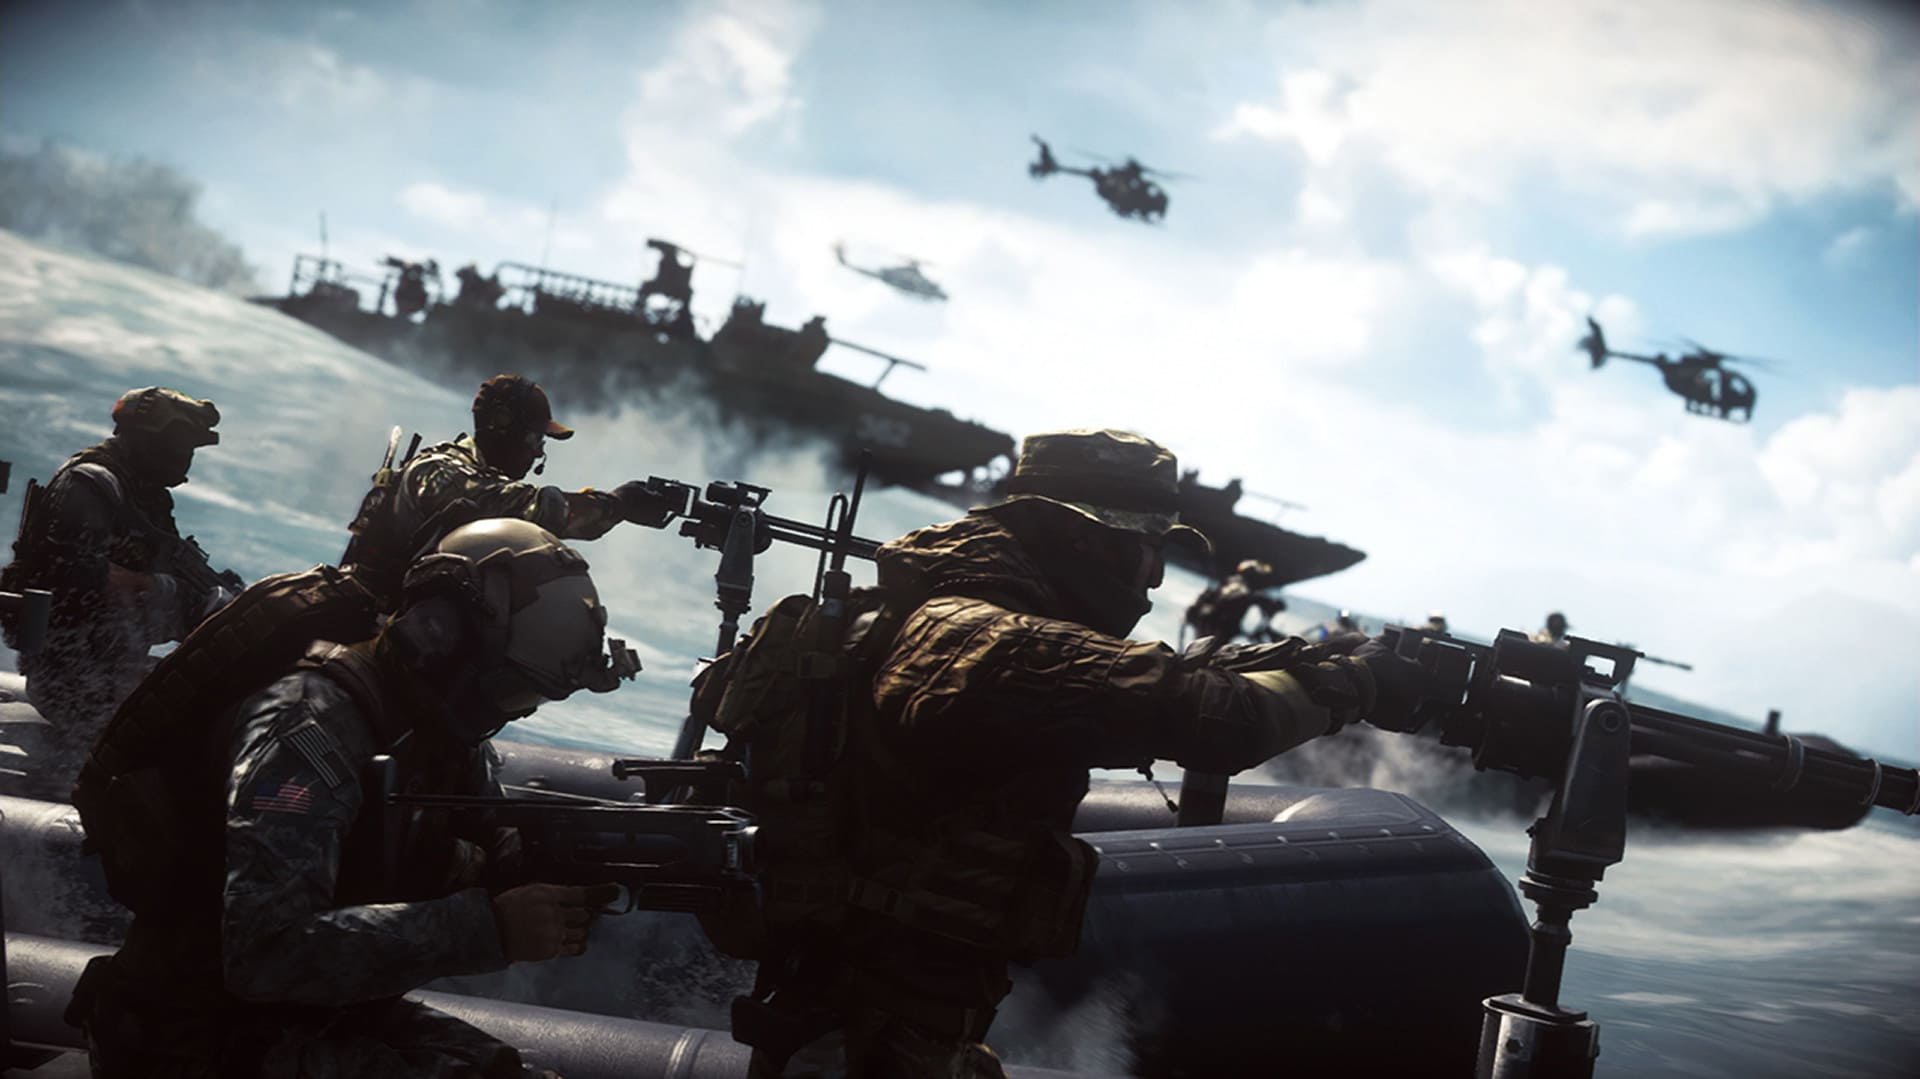 Battlefield 4 Gameserver mieten – Der Vergleich der besten Ranked